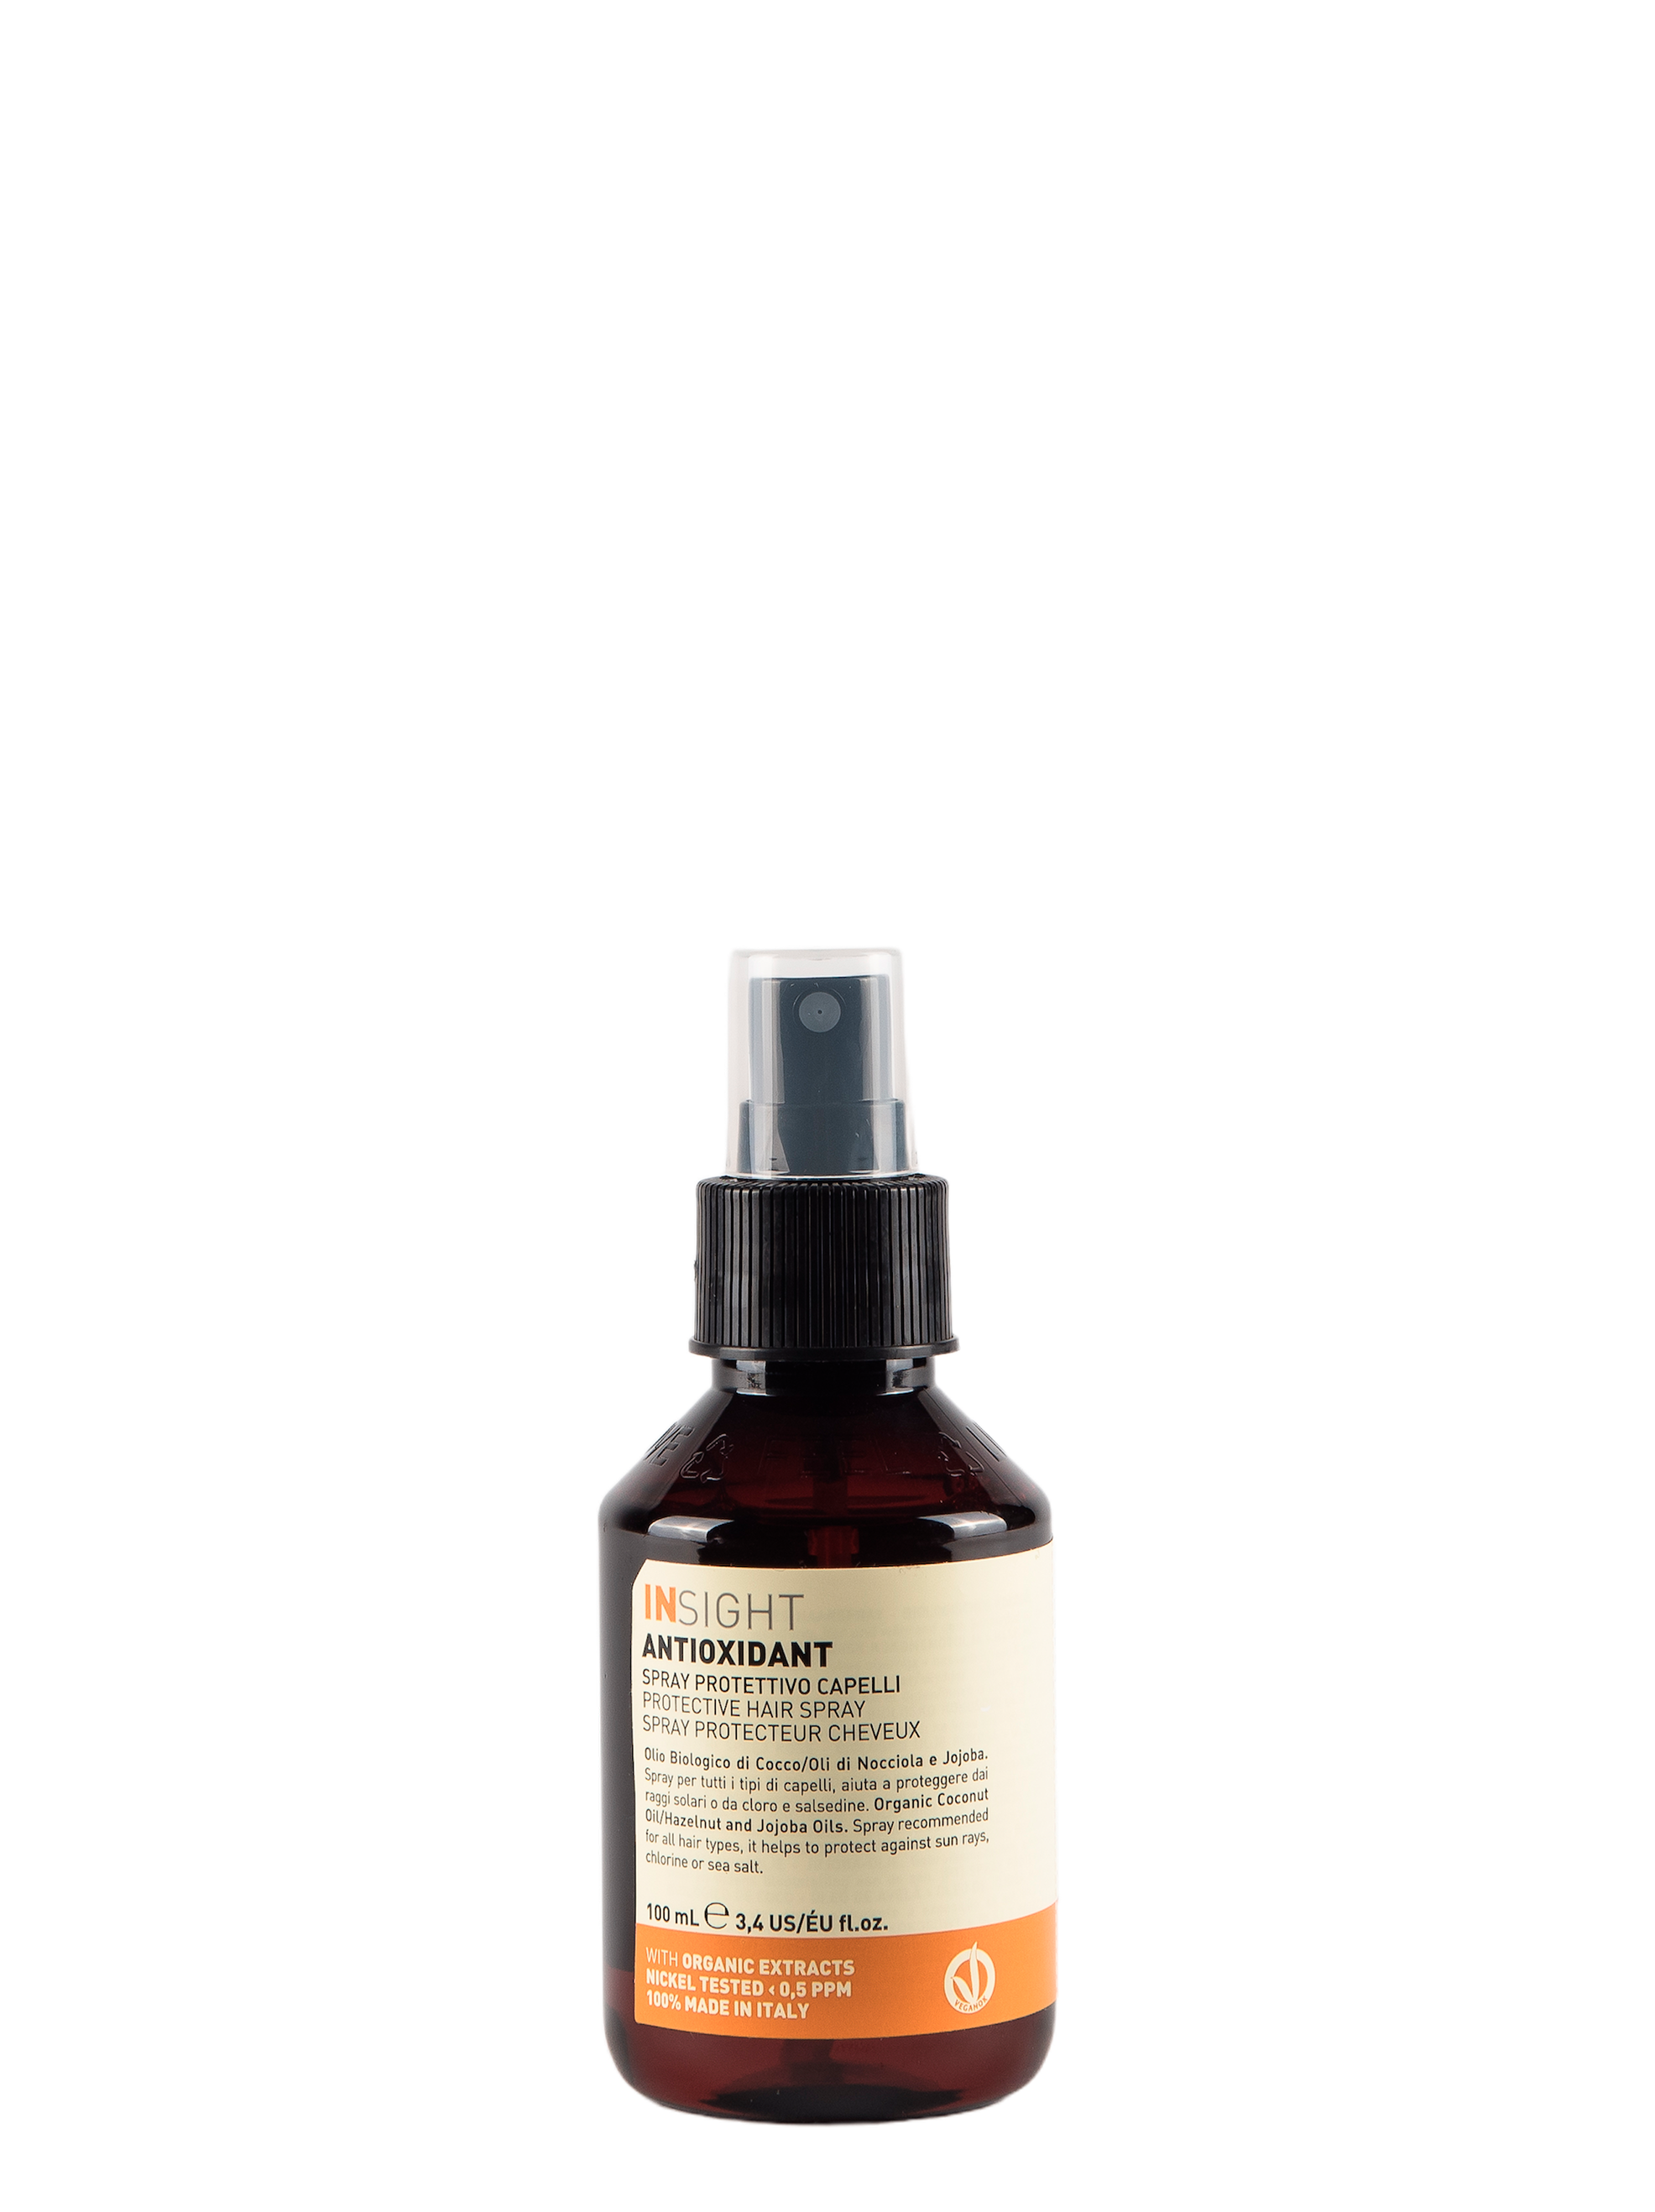 INSIGHT-Antioxidant-Protective-Hair-Spray-100-ml